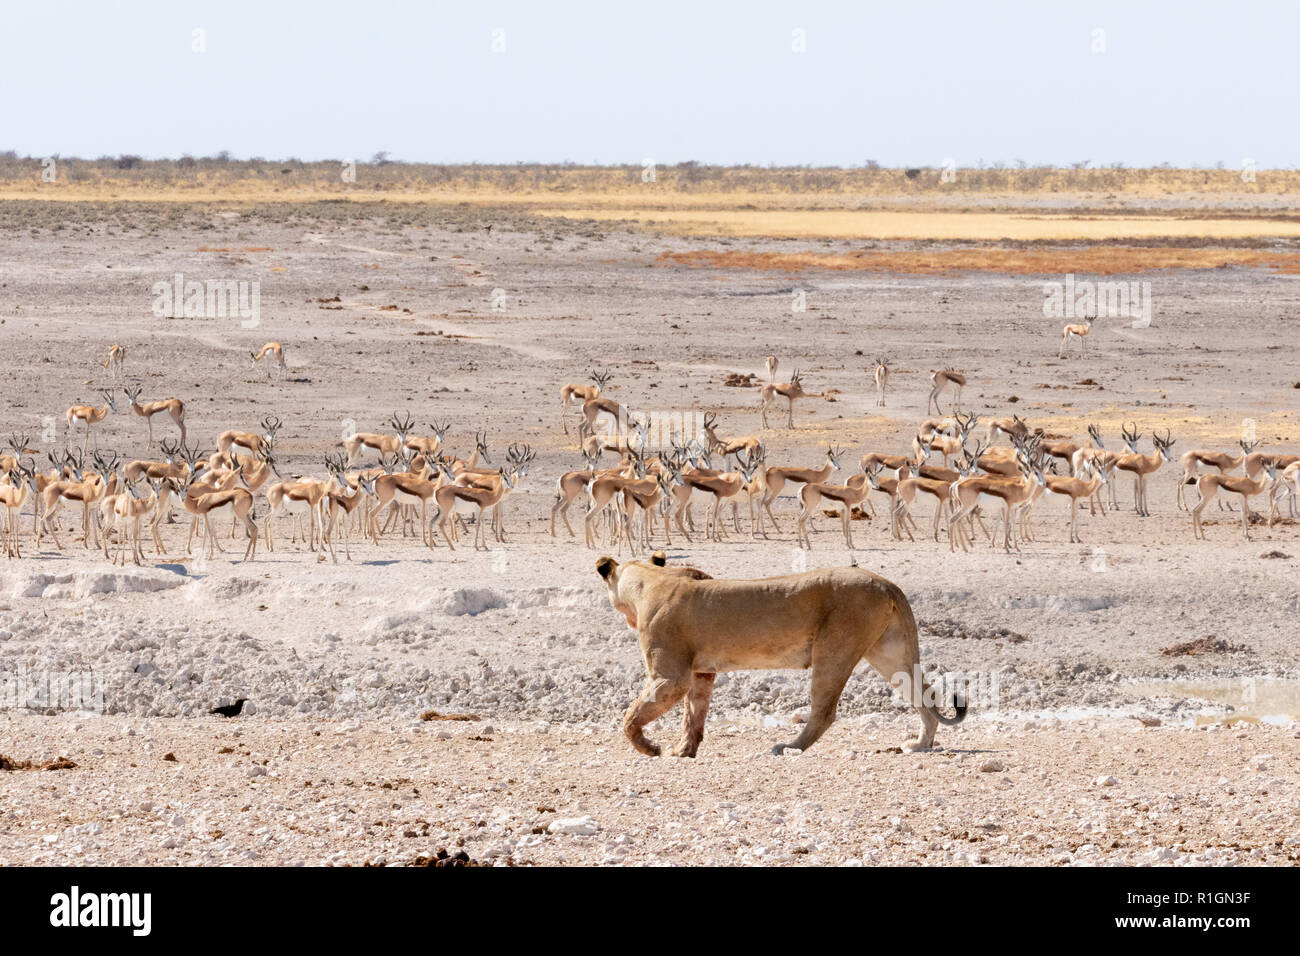 Lioness hunting springbok, Etosha national park, Namibia Africa Stock Photo